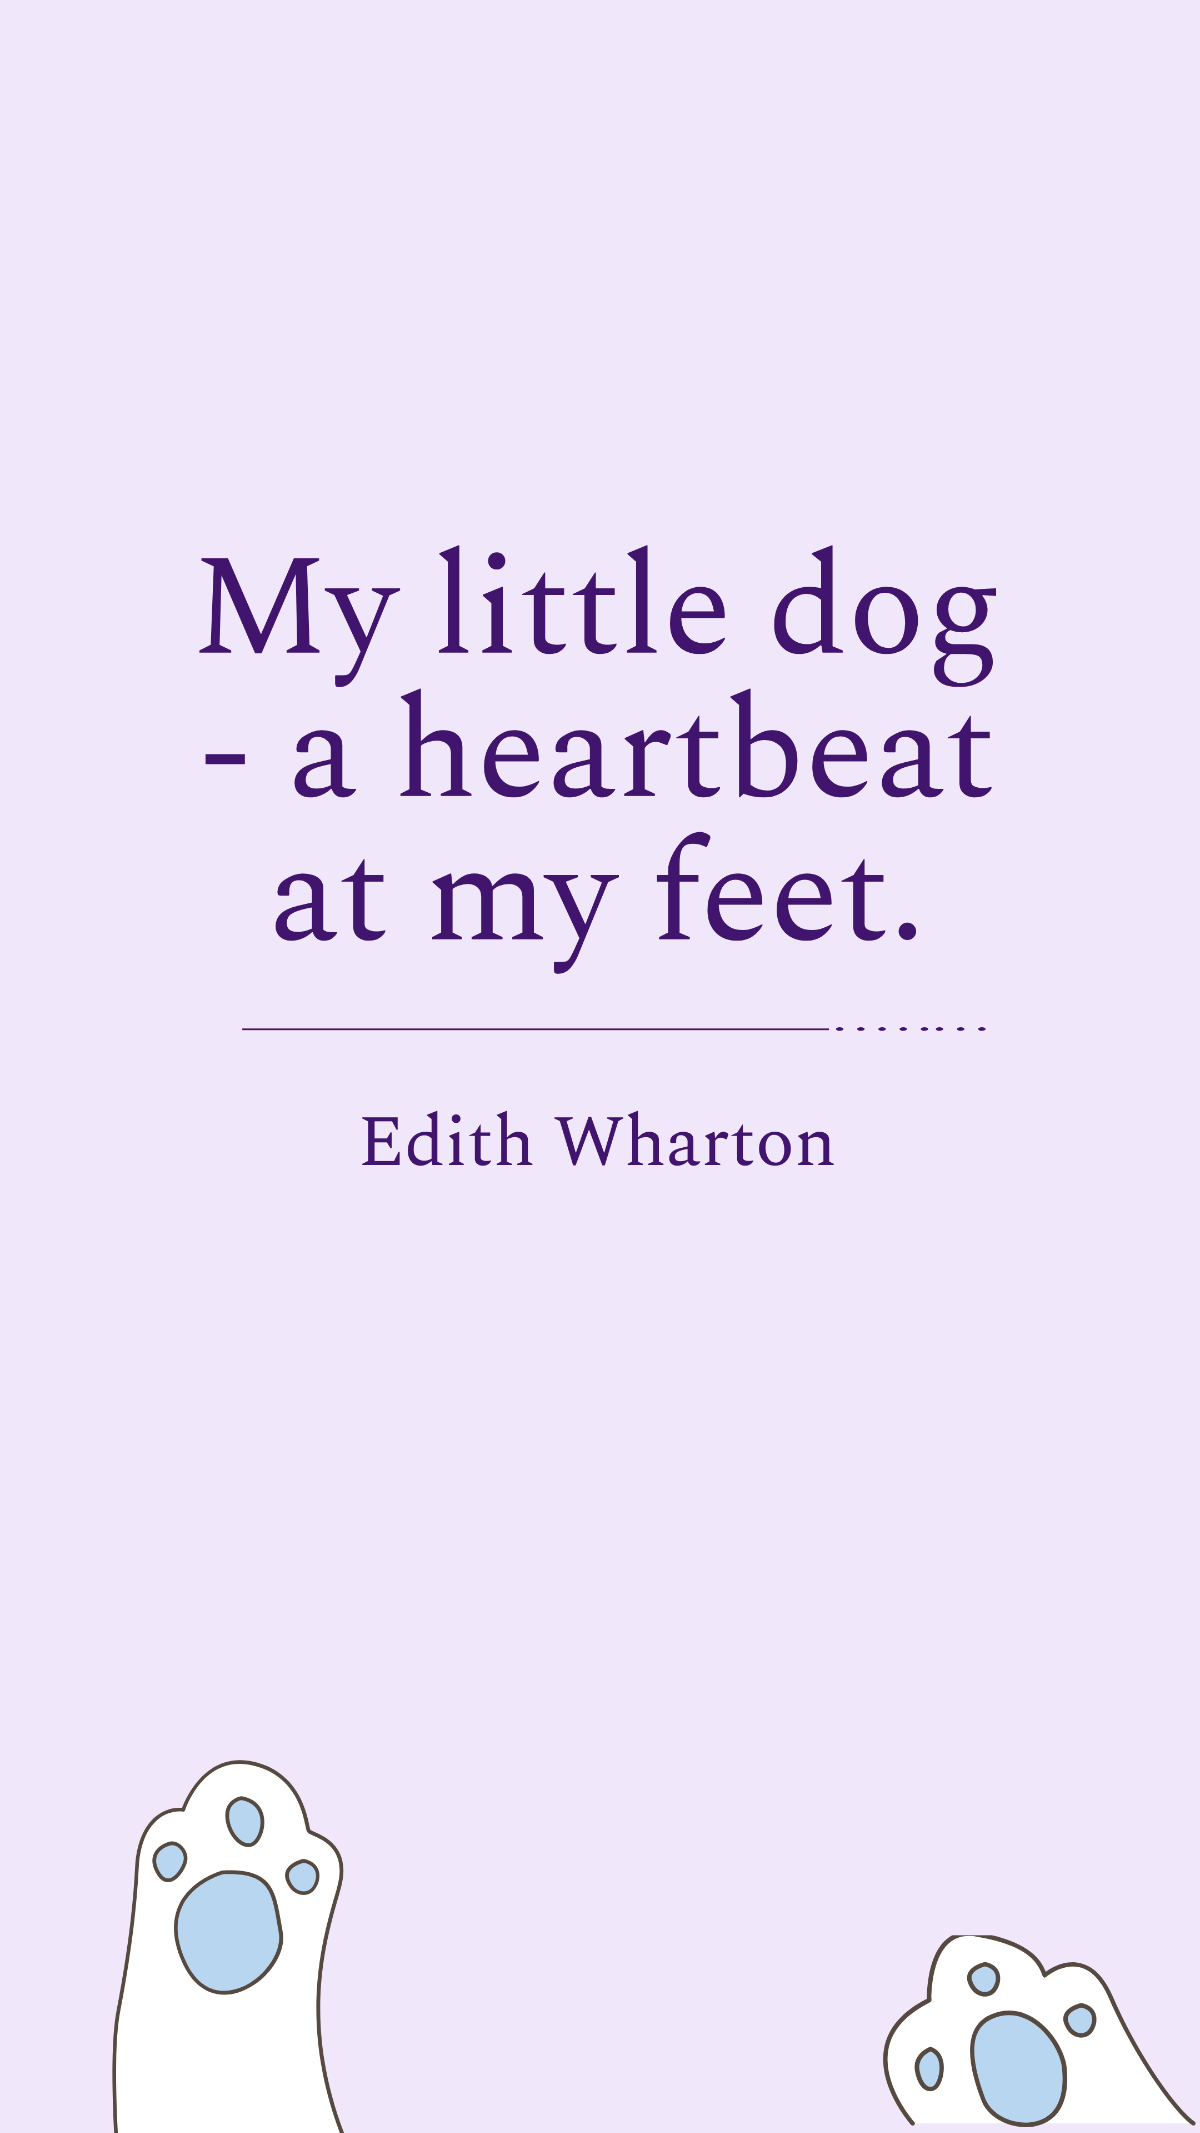 Edith Wharton - My little dog - a heartbeat at my feet.